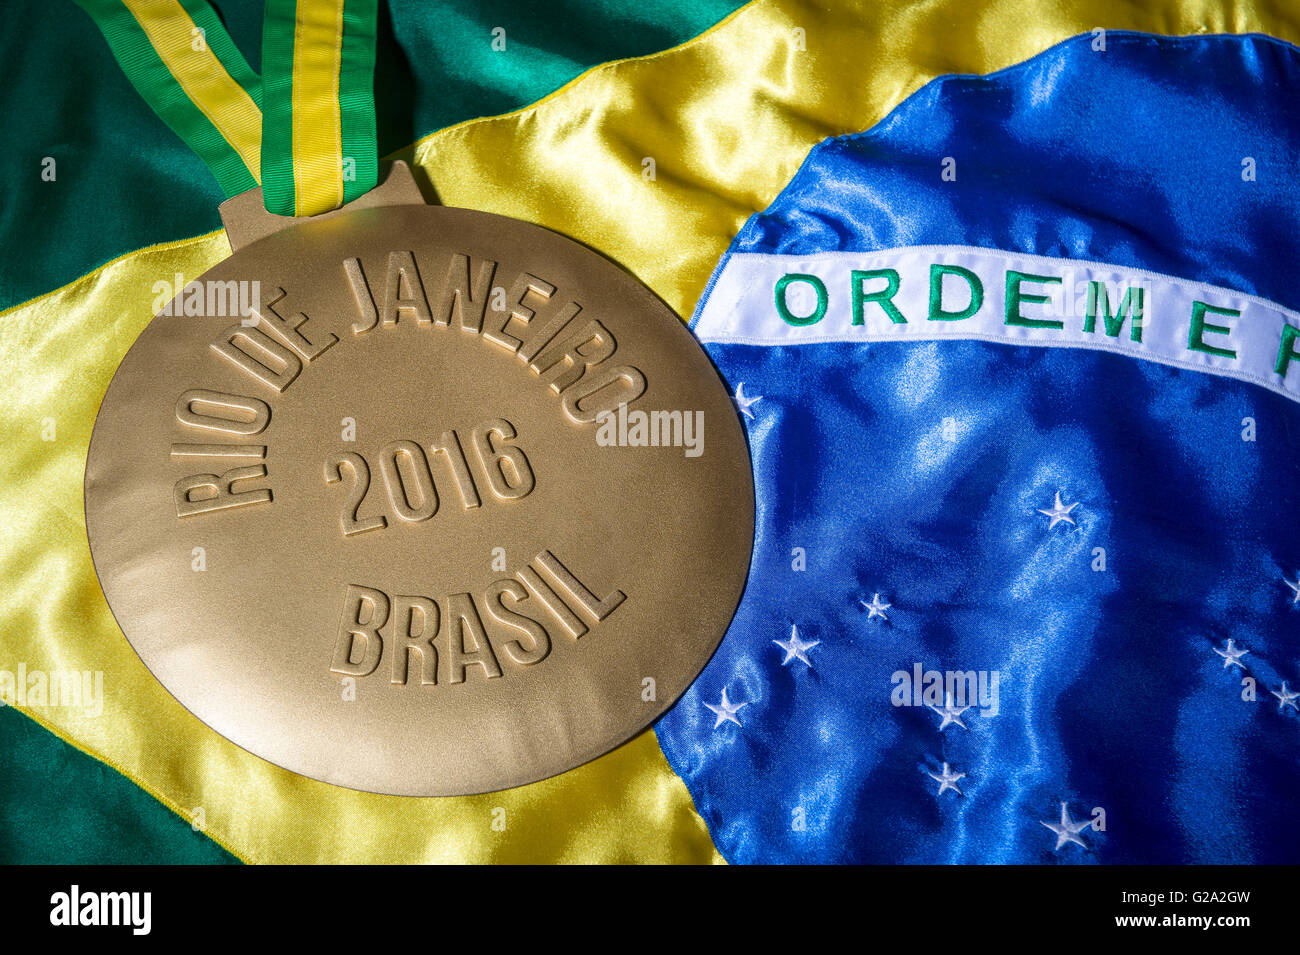 RIO DE JANEIRO - 3. Februar 2016: Große goldene Medaille zur Erinnerung an die 2016 sitzt Olympiade (Olympische Spiele) auf Brasilien-Flagge. Stockfoto